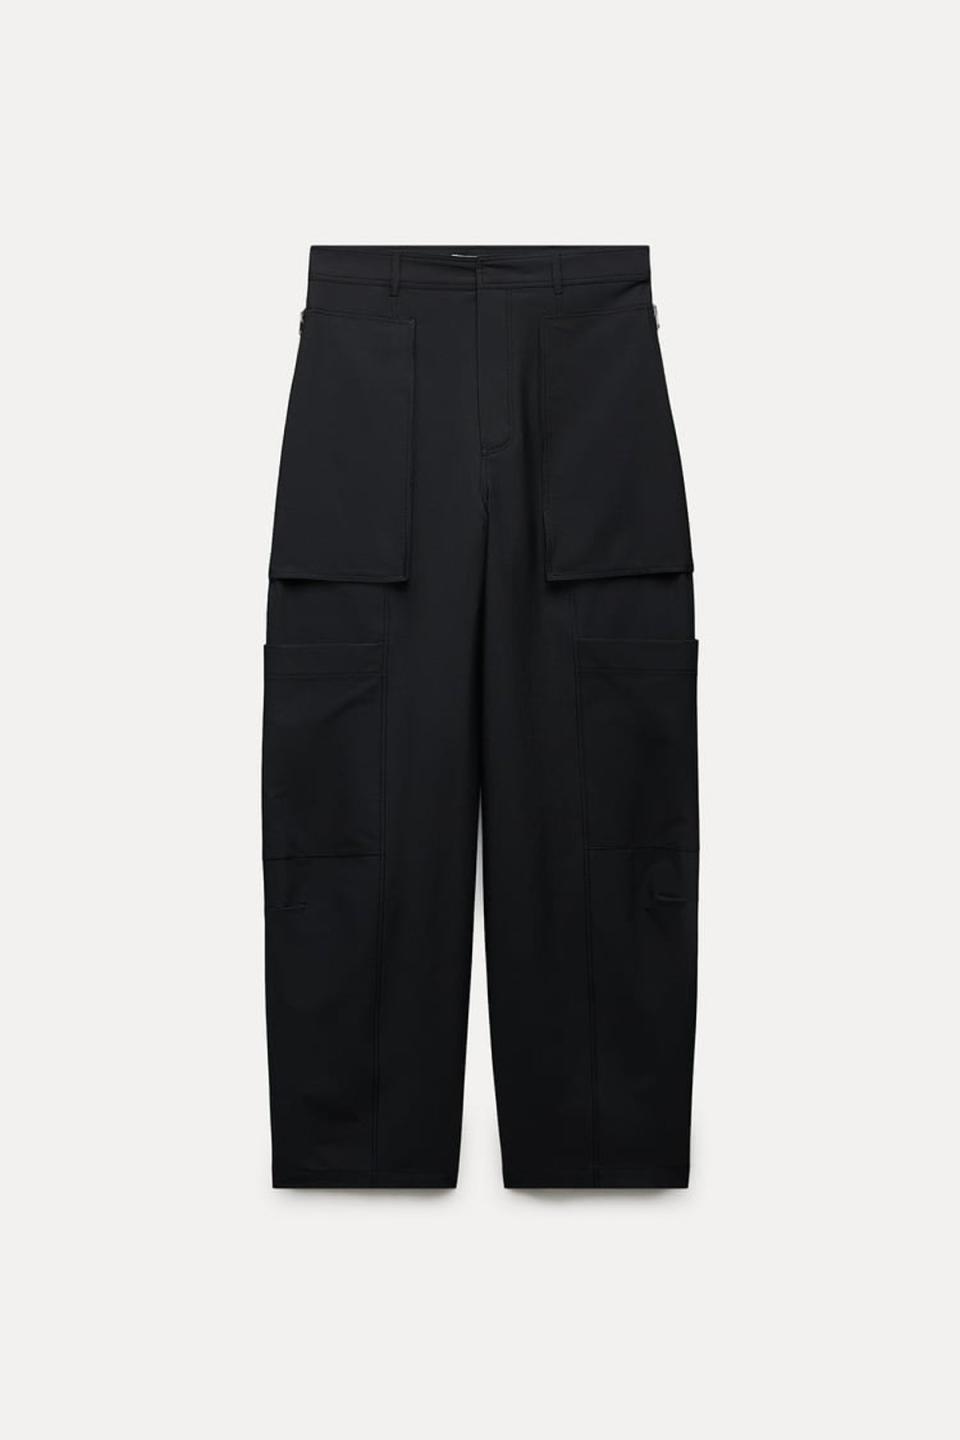 Cargo trousers with zips, £59.99, zara.com (Zara)